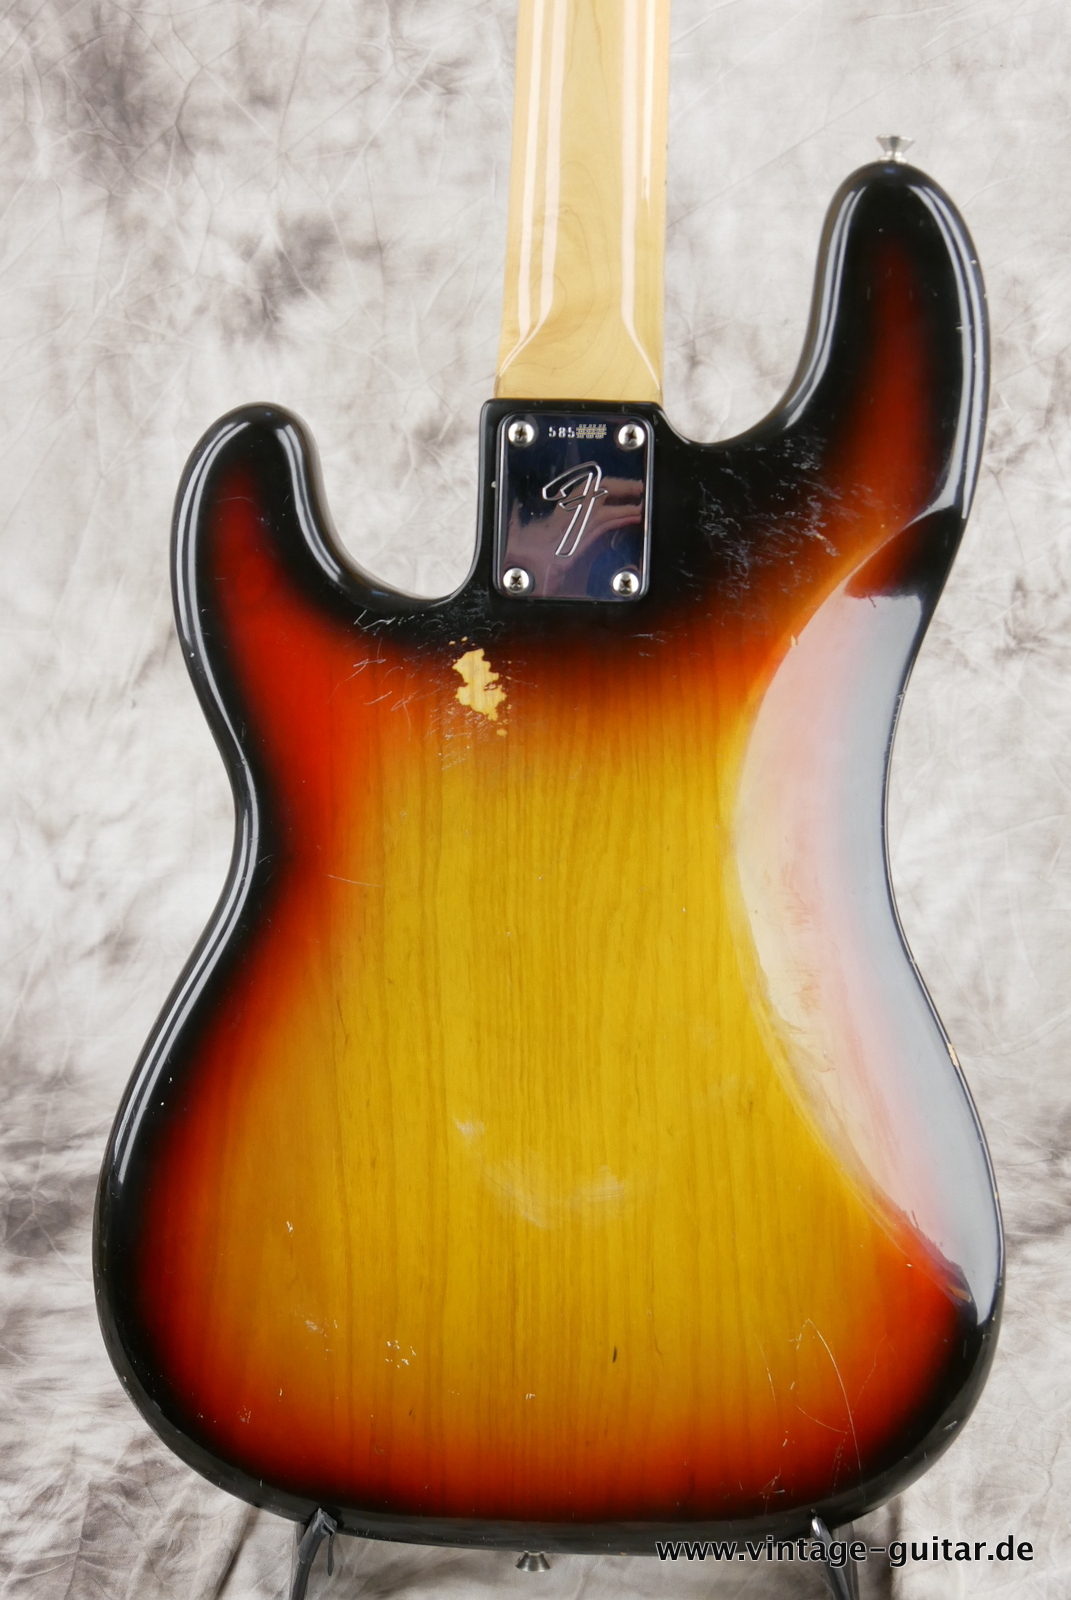 Fender_Precision_Bass_sunburst_1975-004.JPG